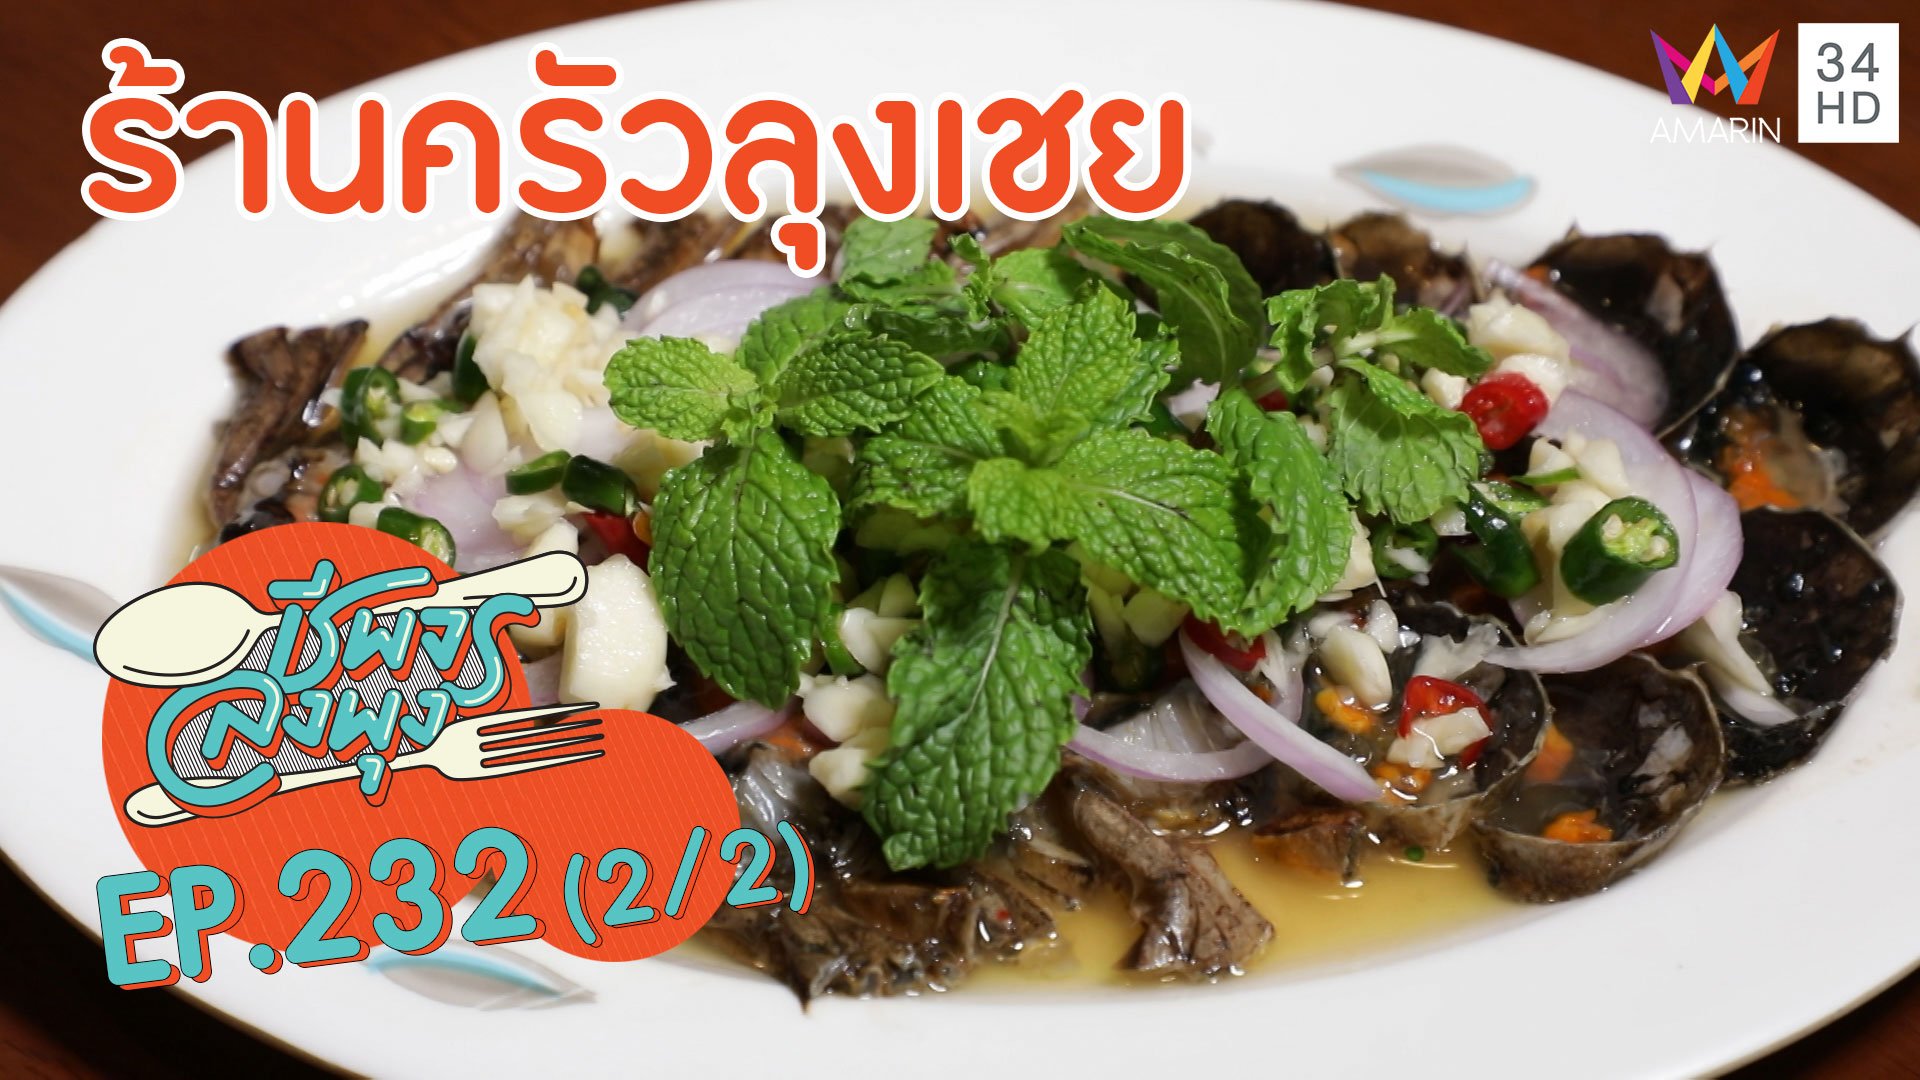 จานเด็ดจันทบุรี 'ร้านครัวลุงเชย'  | ชีพจรลงพุง | 29 ส.ค. 63 (2/2) | AMARIN TVHD34